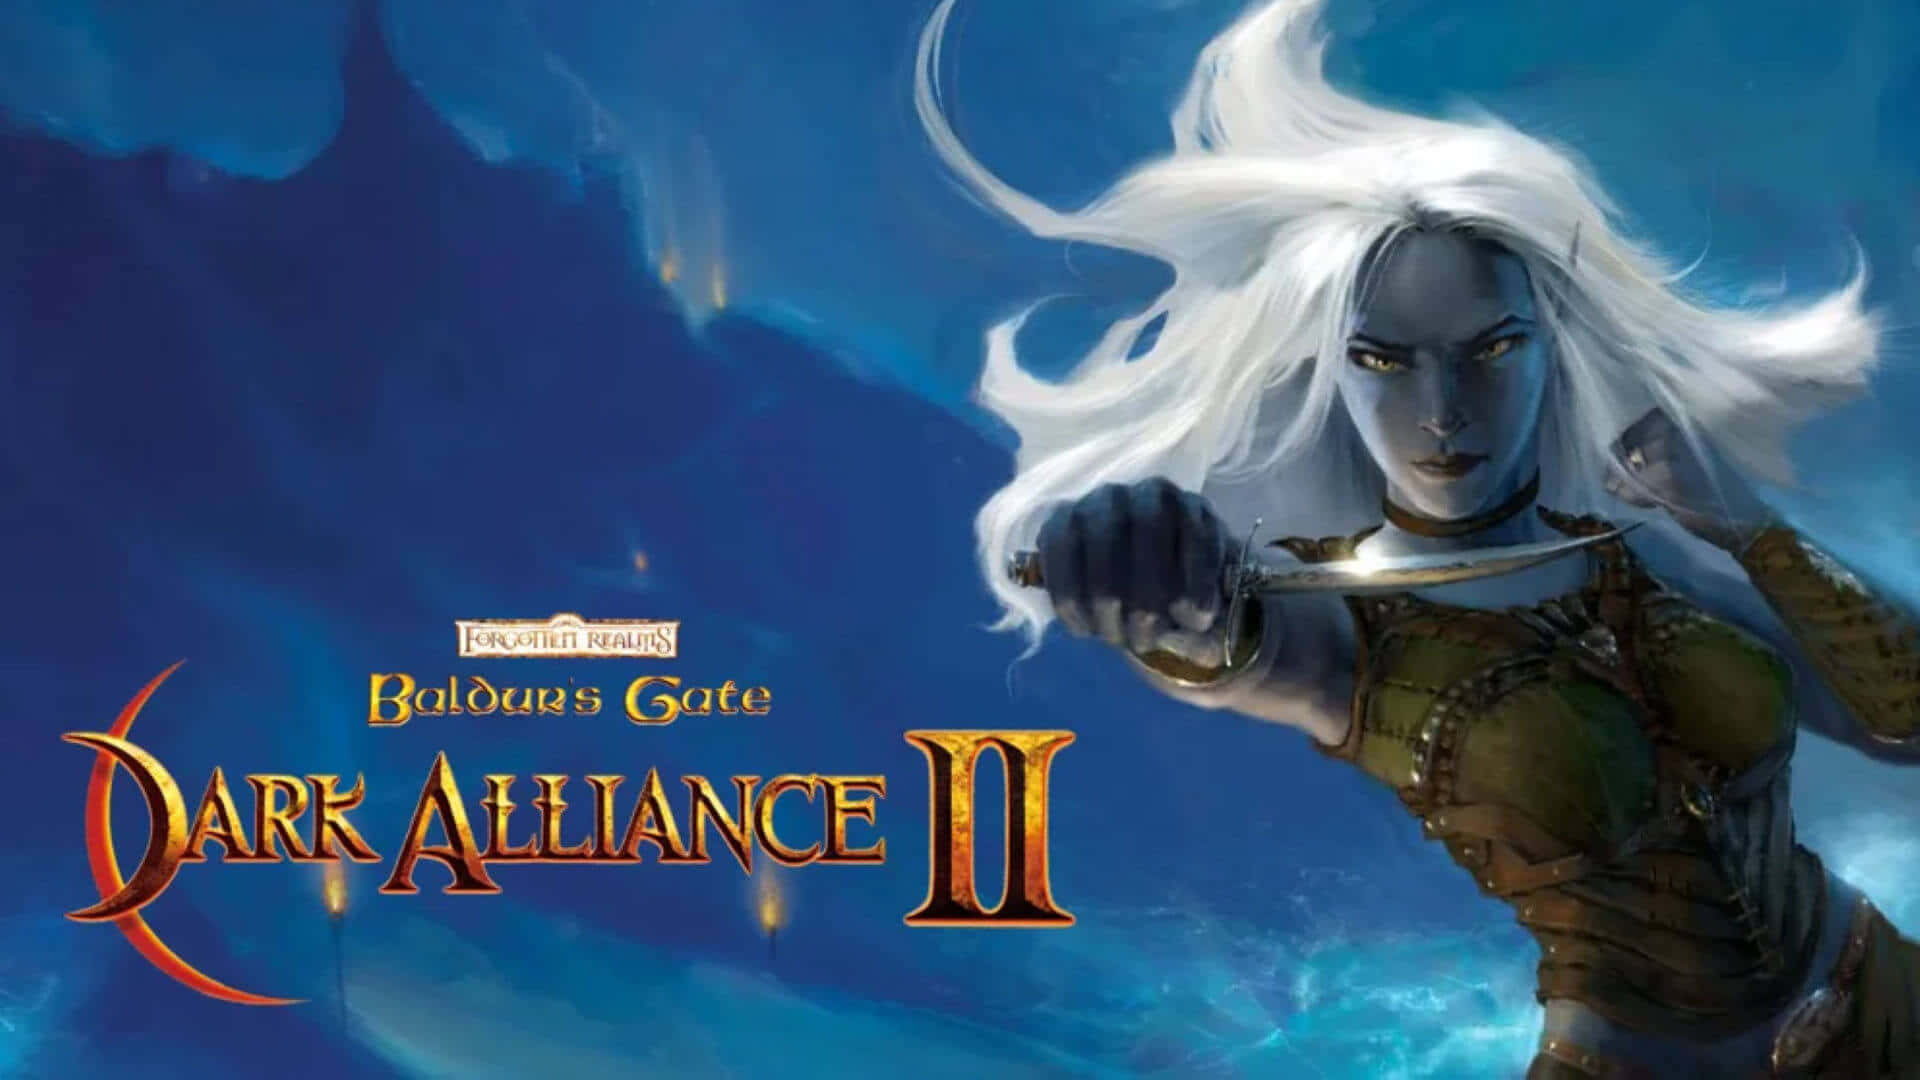 Dark Alliance Epic Battle Scene Wallpaper Wallpaper